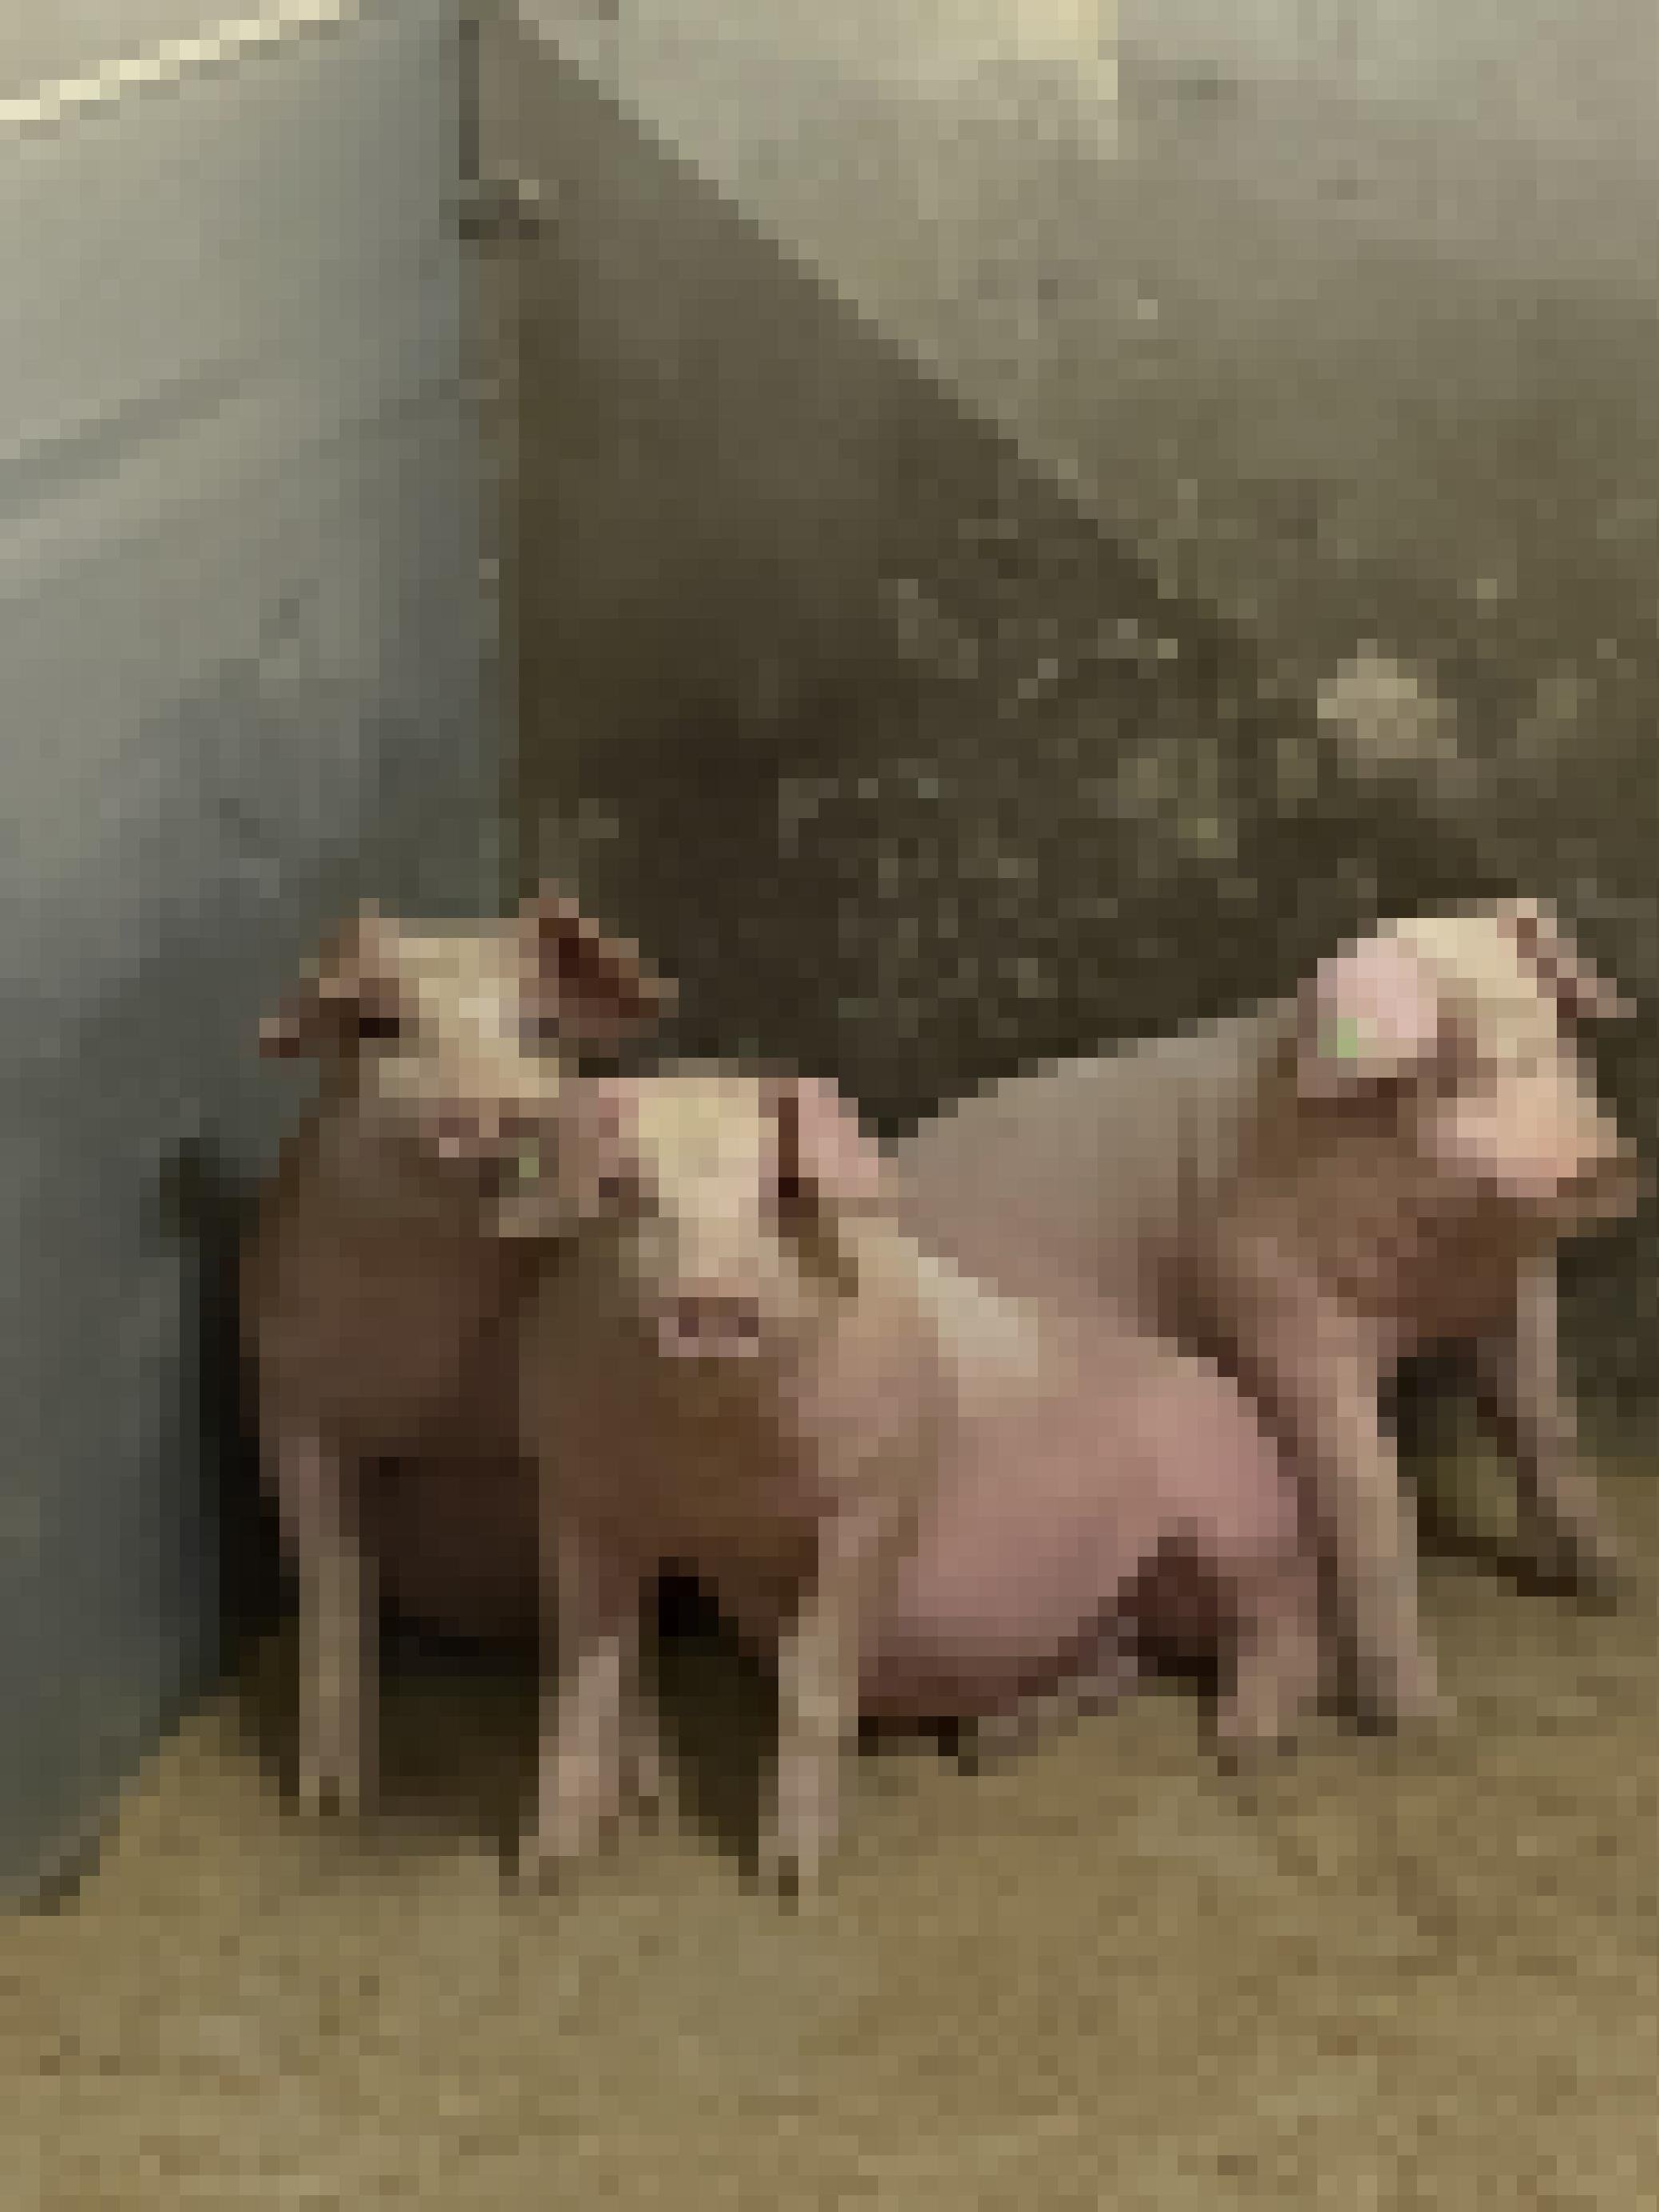 drei kleine Schweine in einer Box.